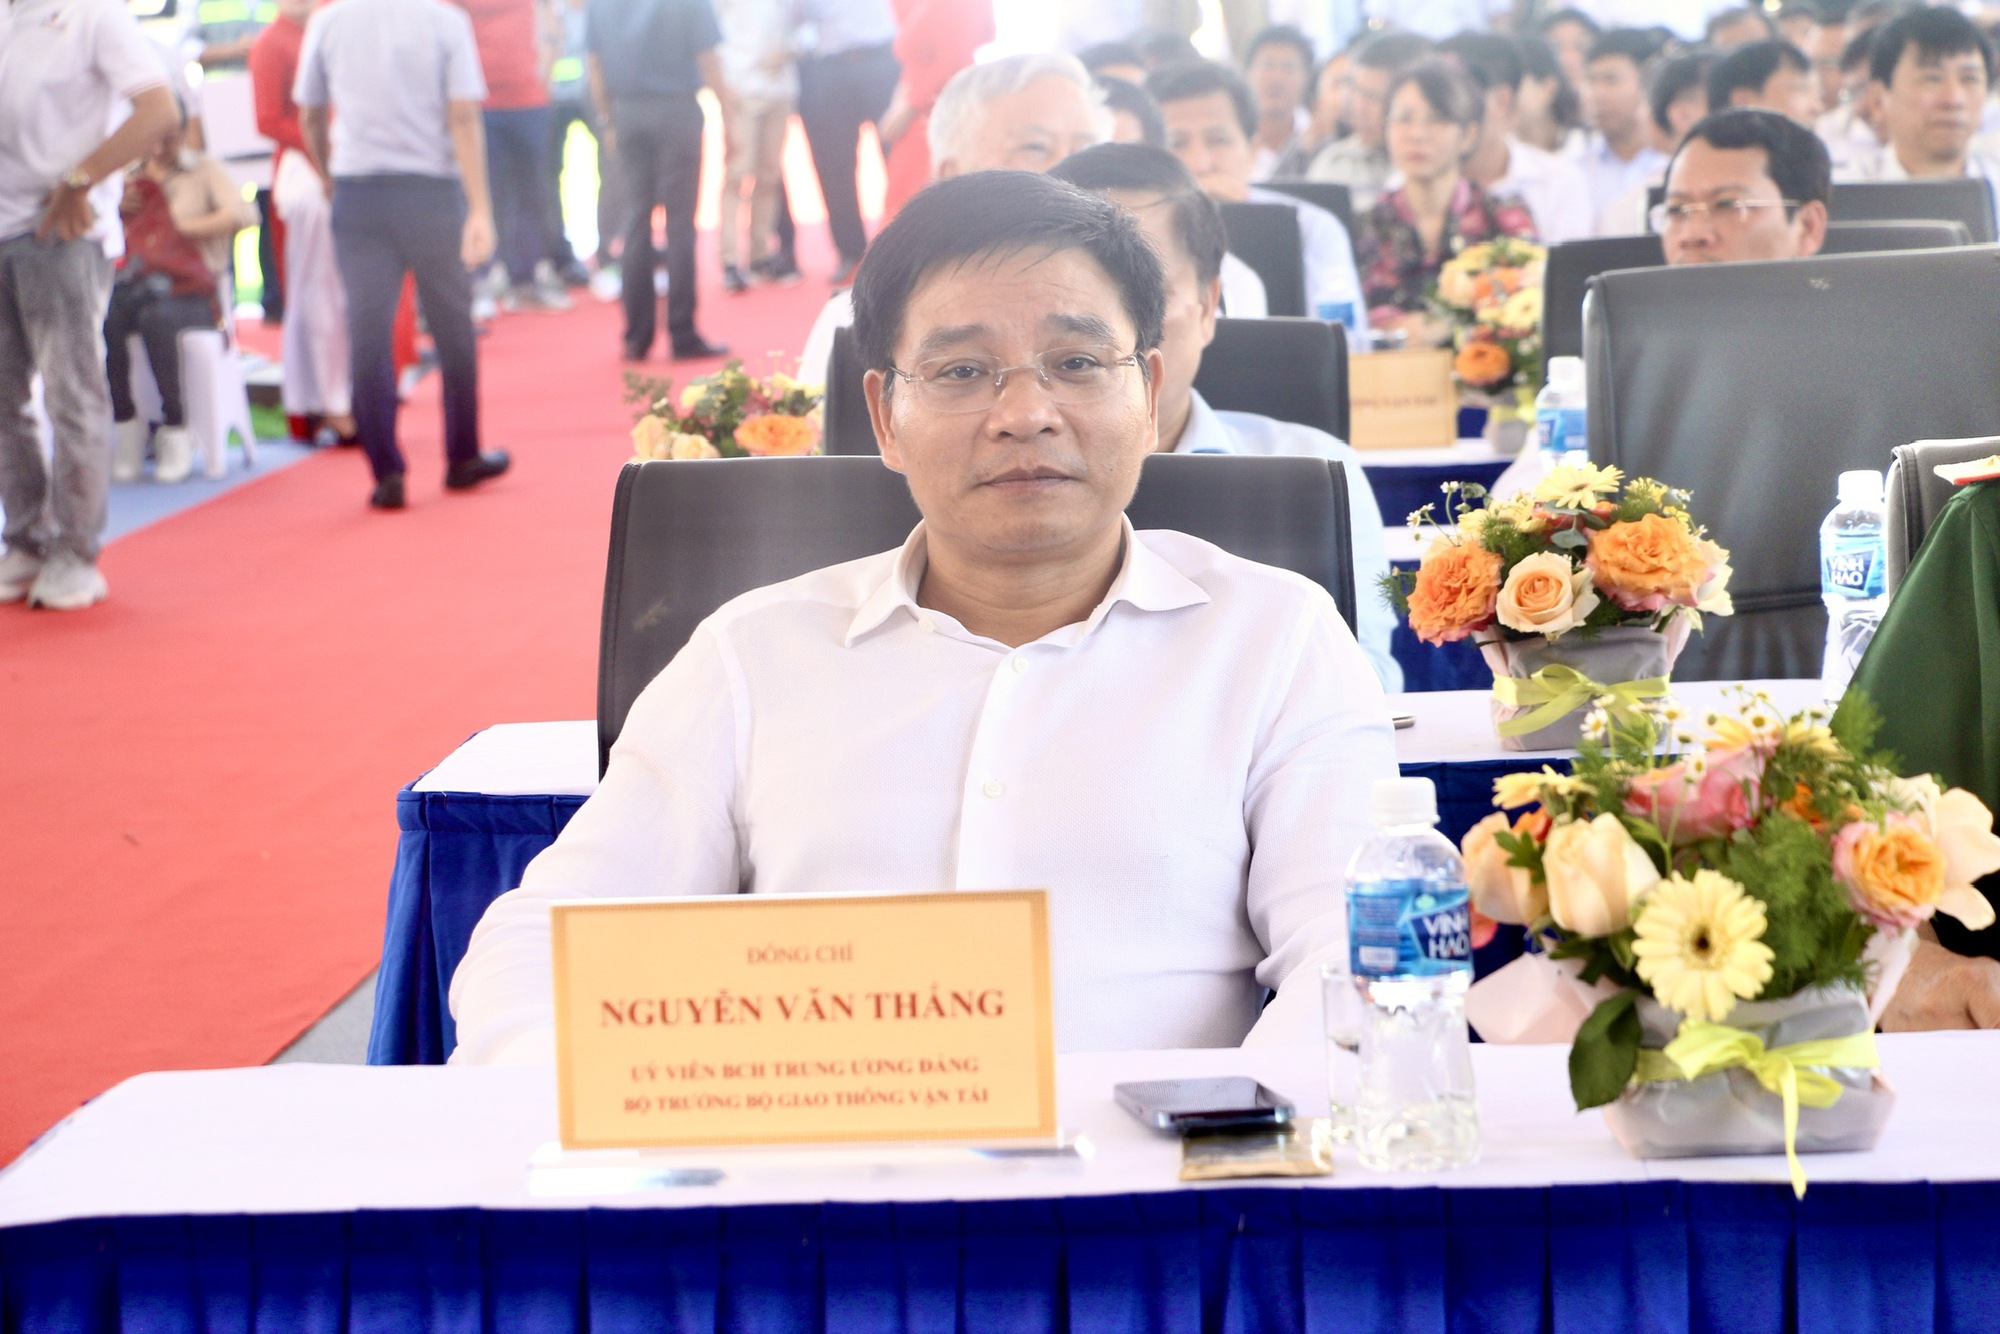 Trực tiếp: Khánh thành hai dự án cao tốc Nha Trang - Cam Lâm, Vĩnh Hảo - Phan Thiết - Ảnh 1.